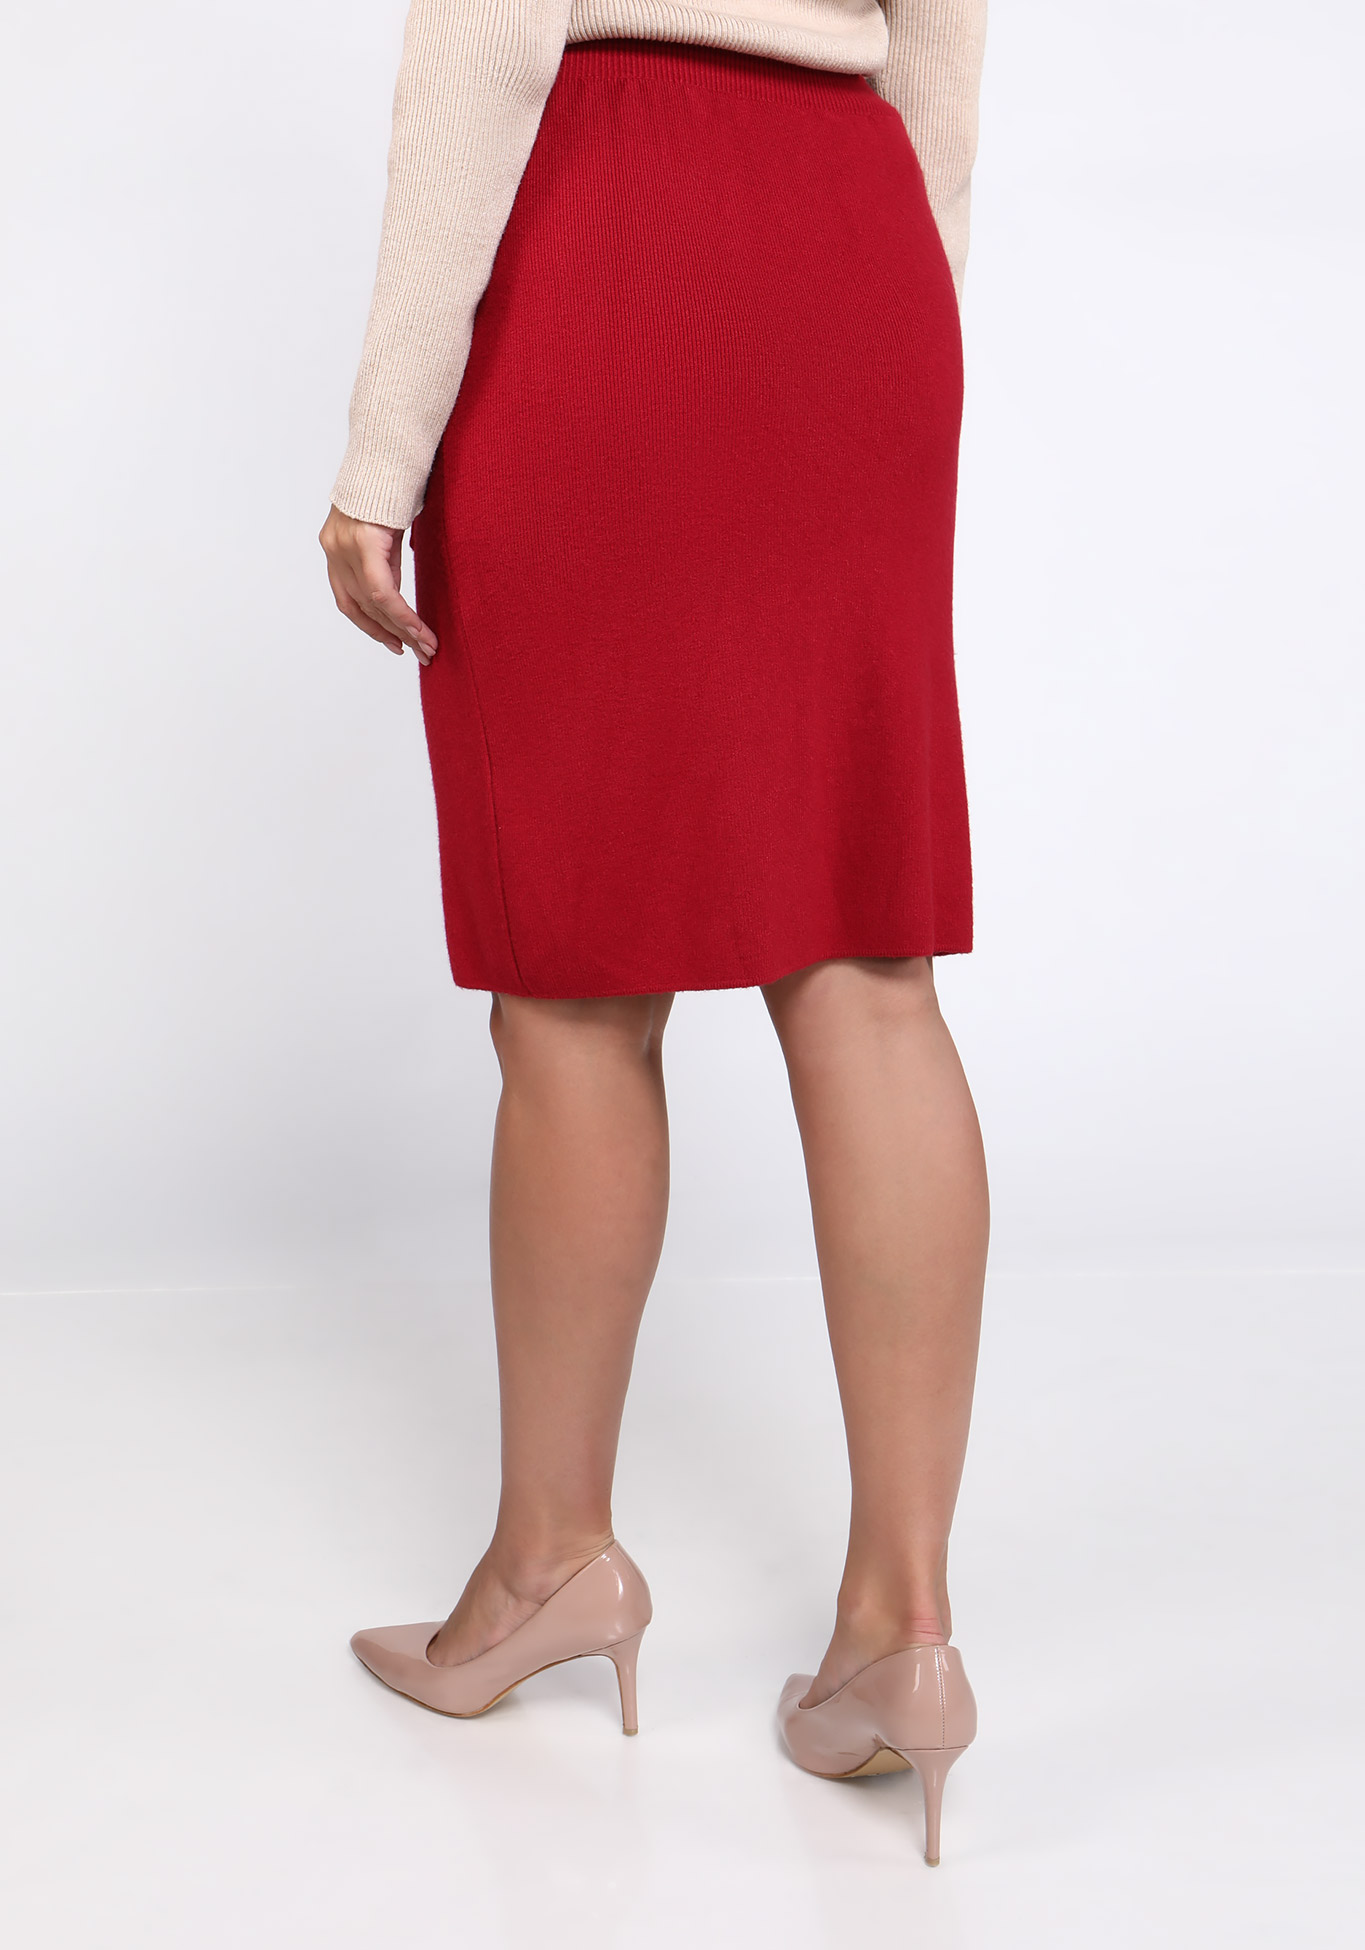 Женская юбка с карманами "Яркий образ", размер 52, цвет красный - фото 3